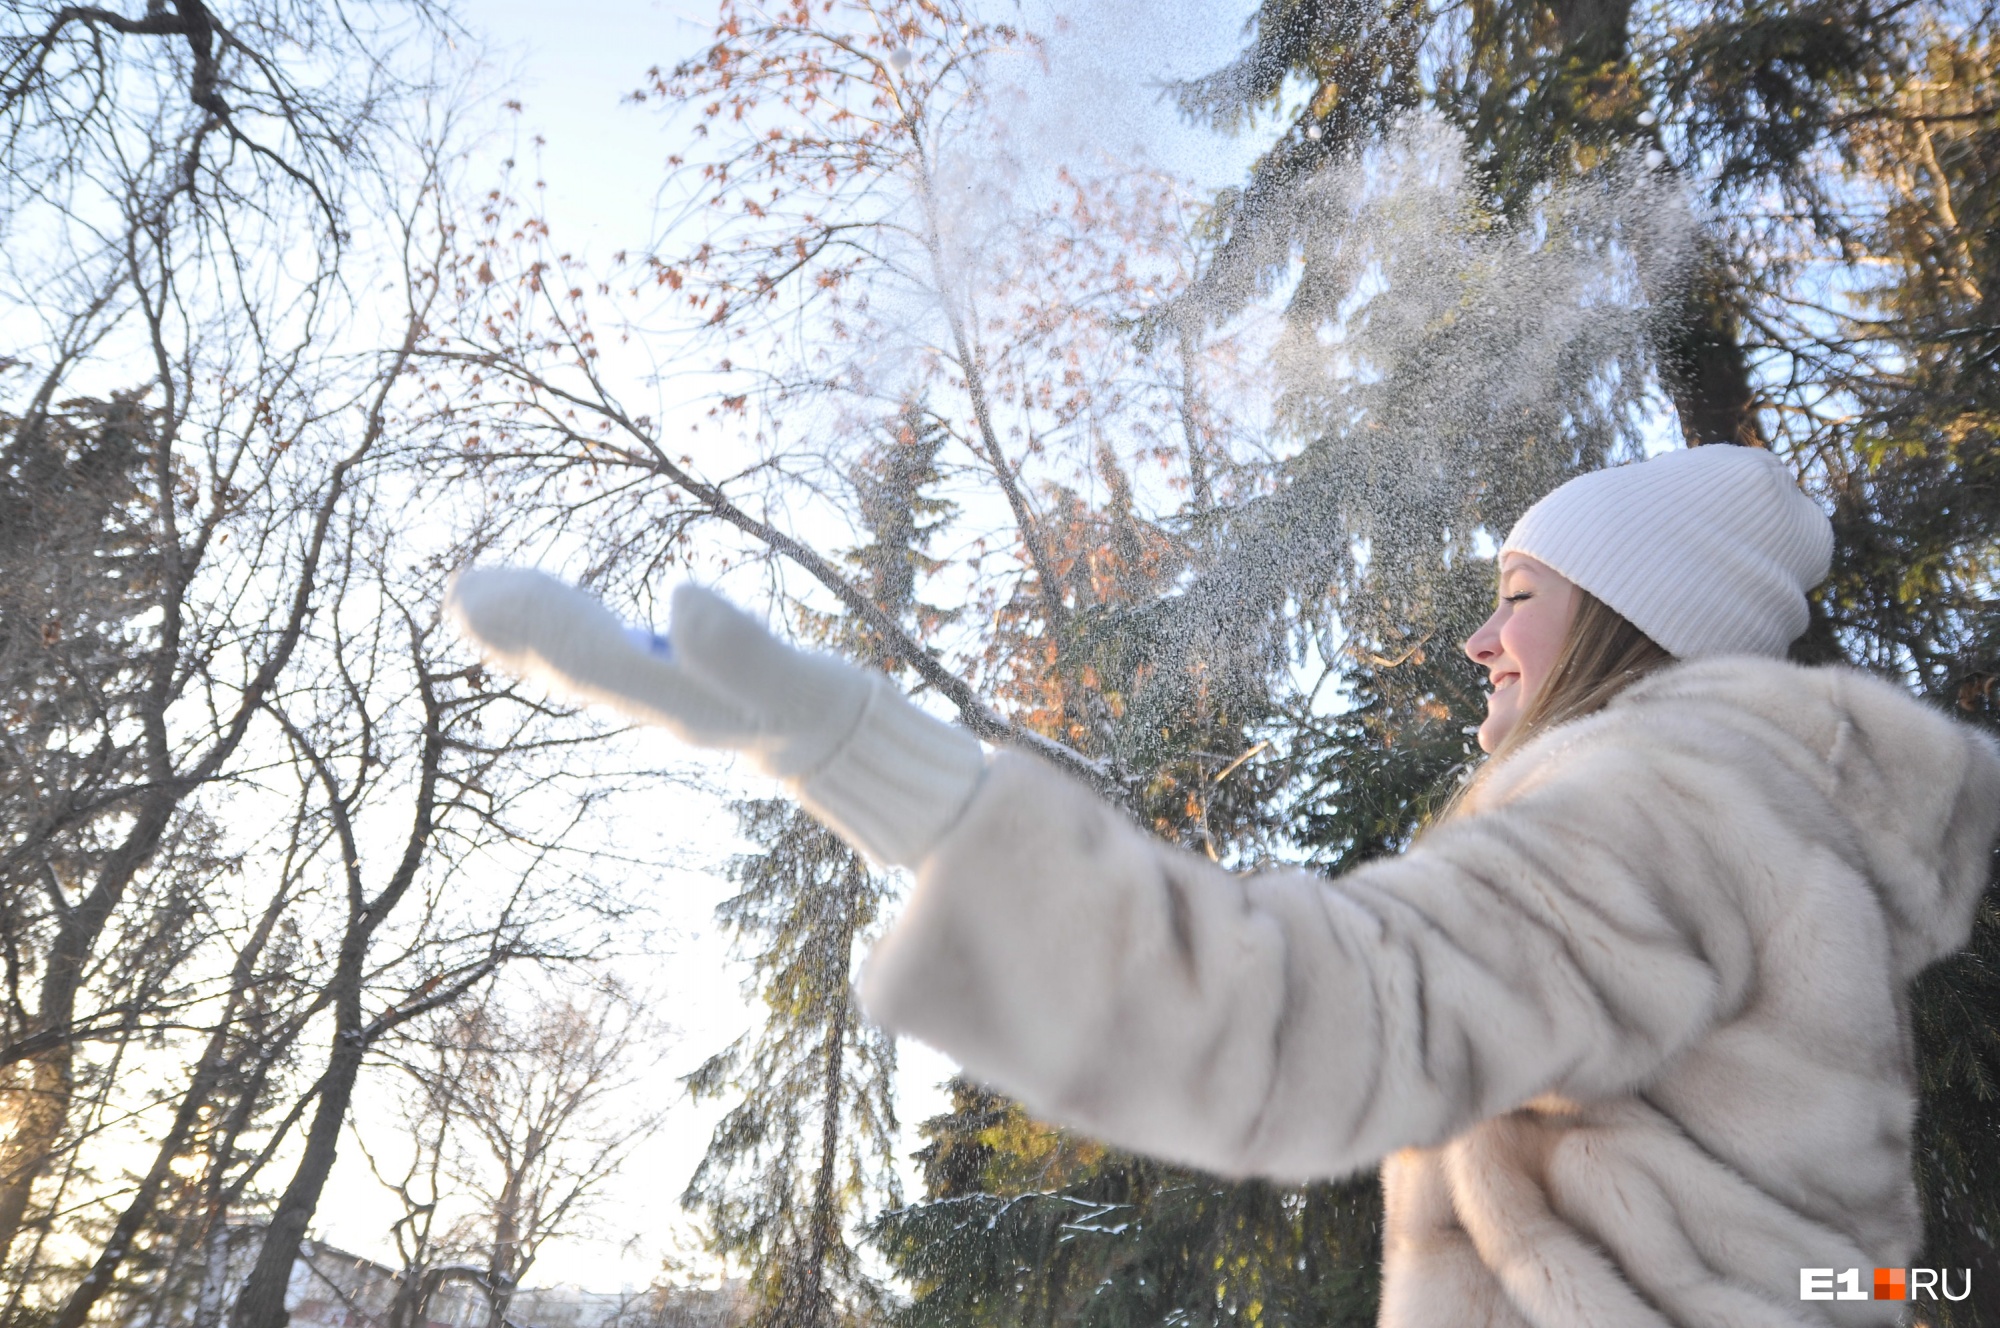 Какой будет погода в Екатеринбурге на Новый год? Публикуем прогноз от главного синоптика области